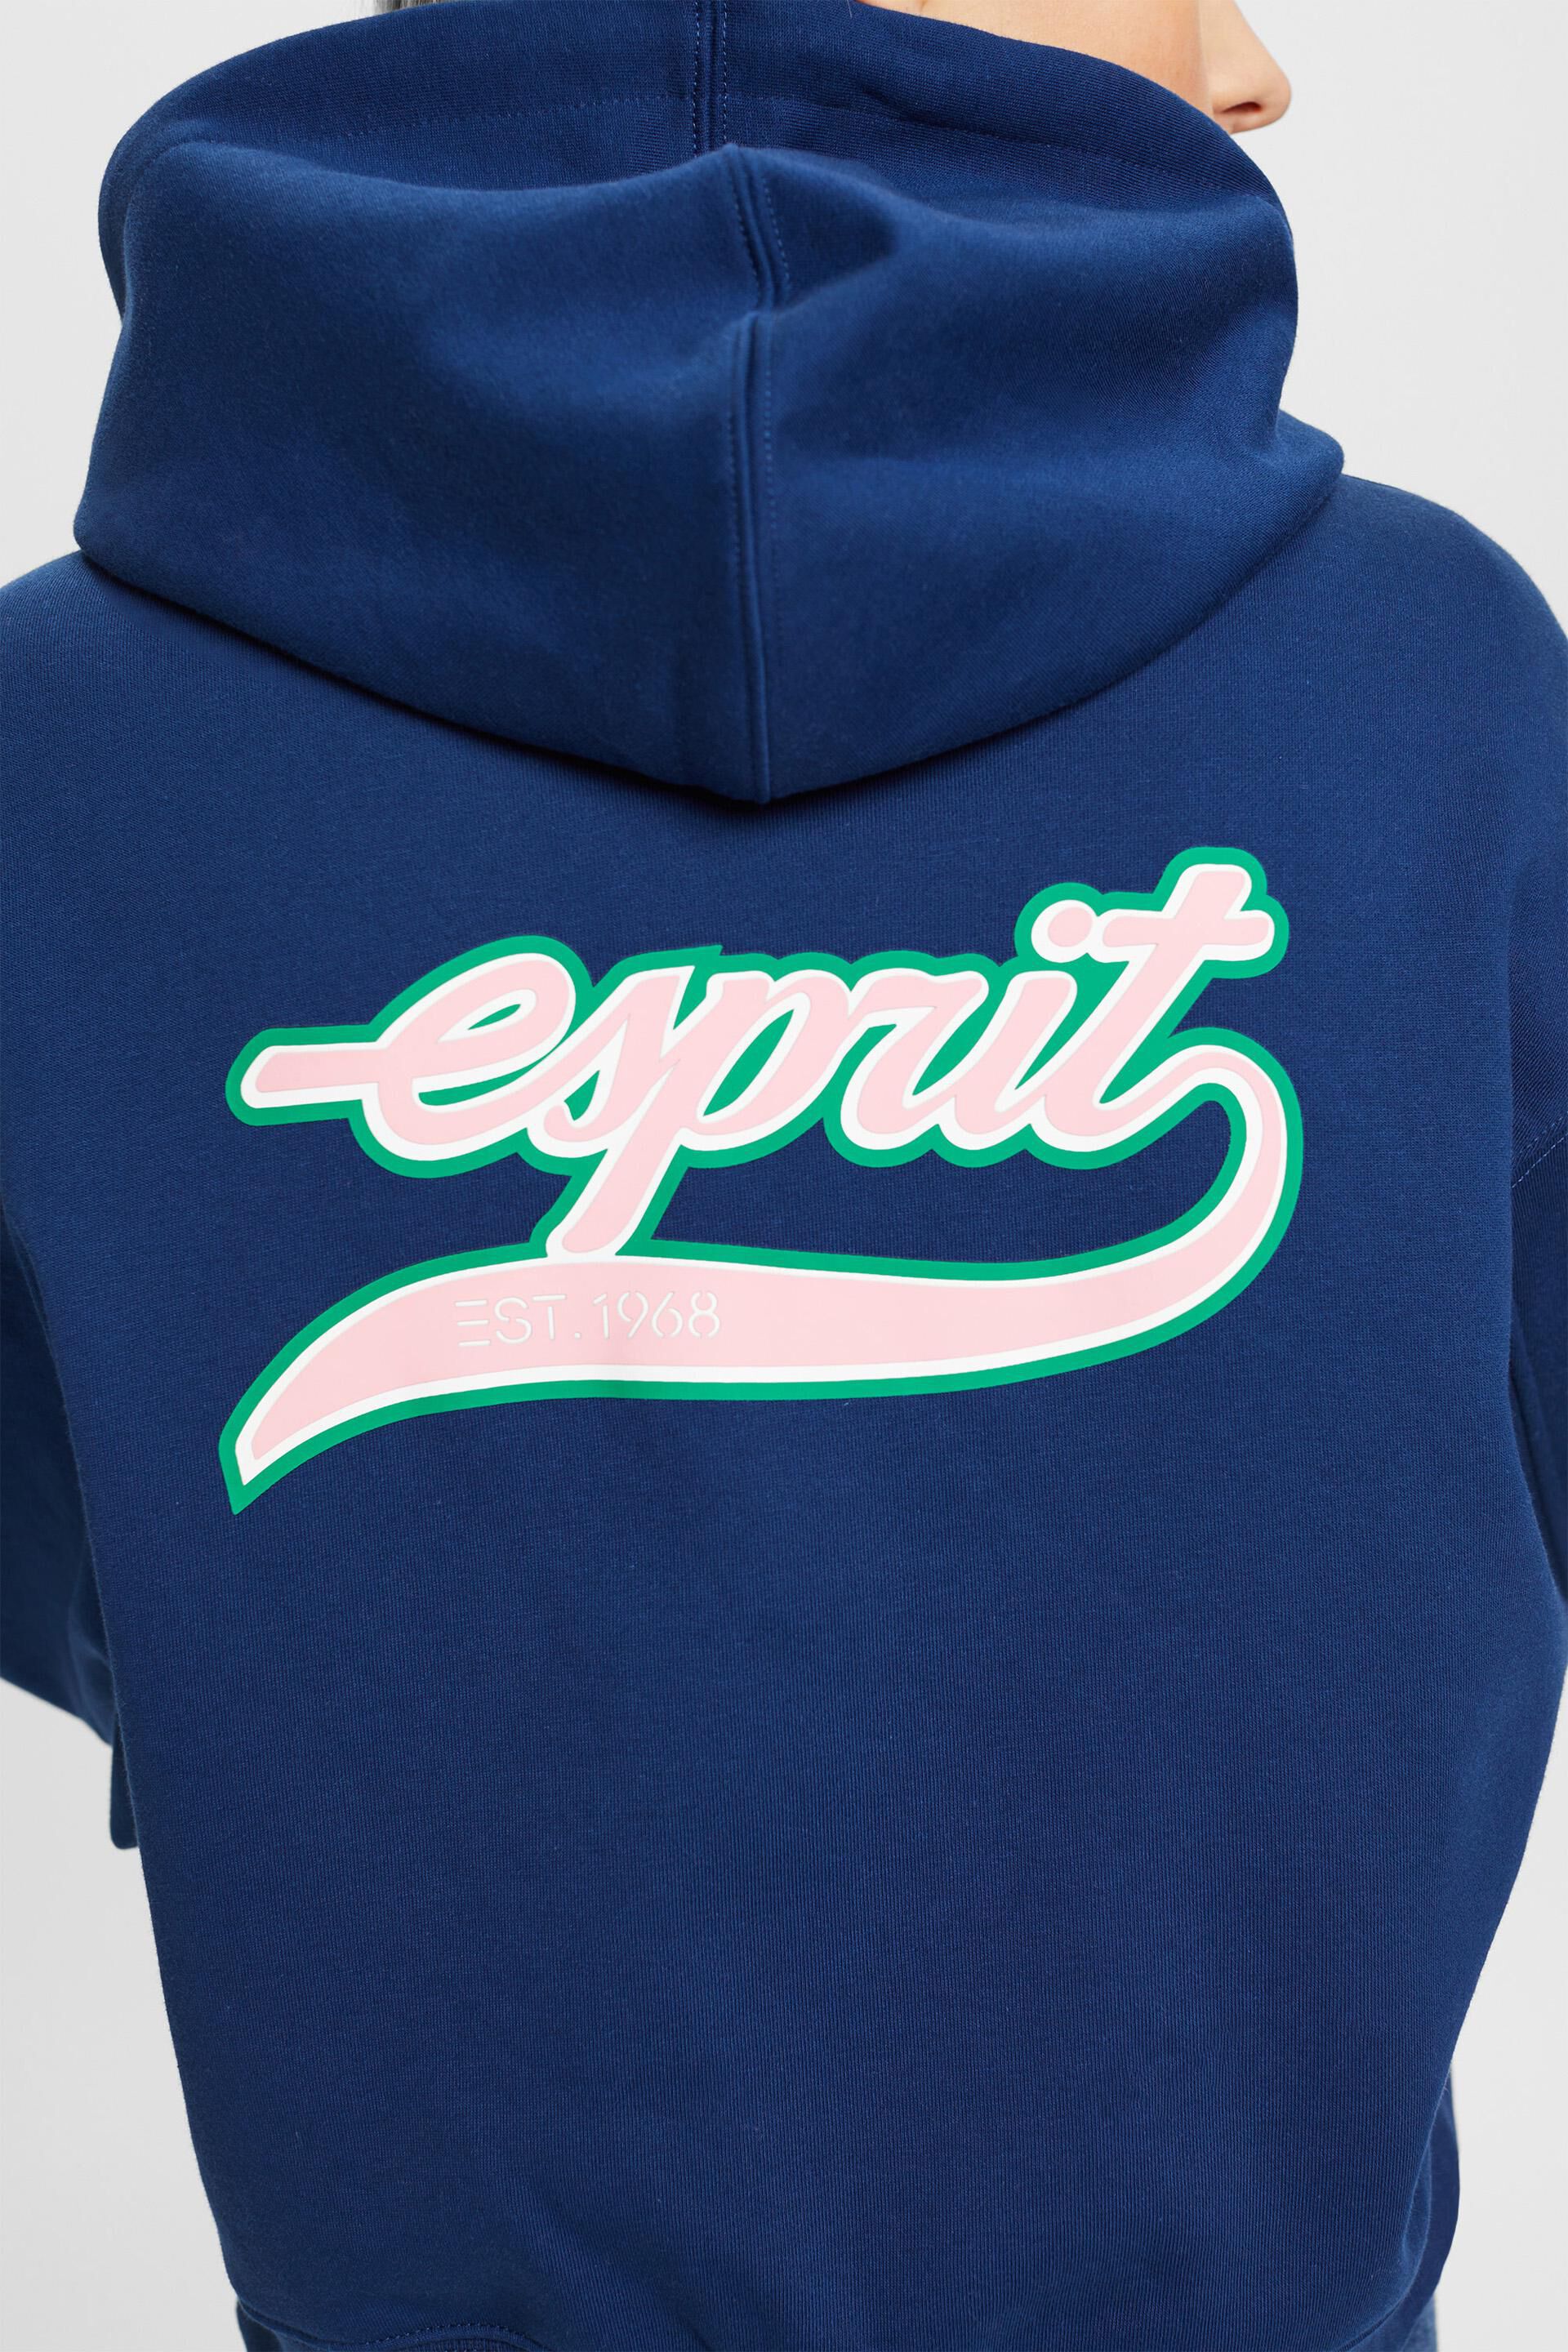 Esprit auf der Kurzer Reißverschluss Rückseite Kapuzenpullover und mit Logo-Print